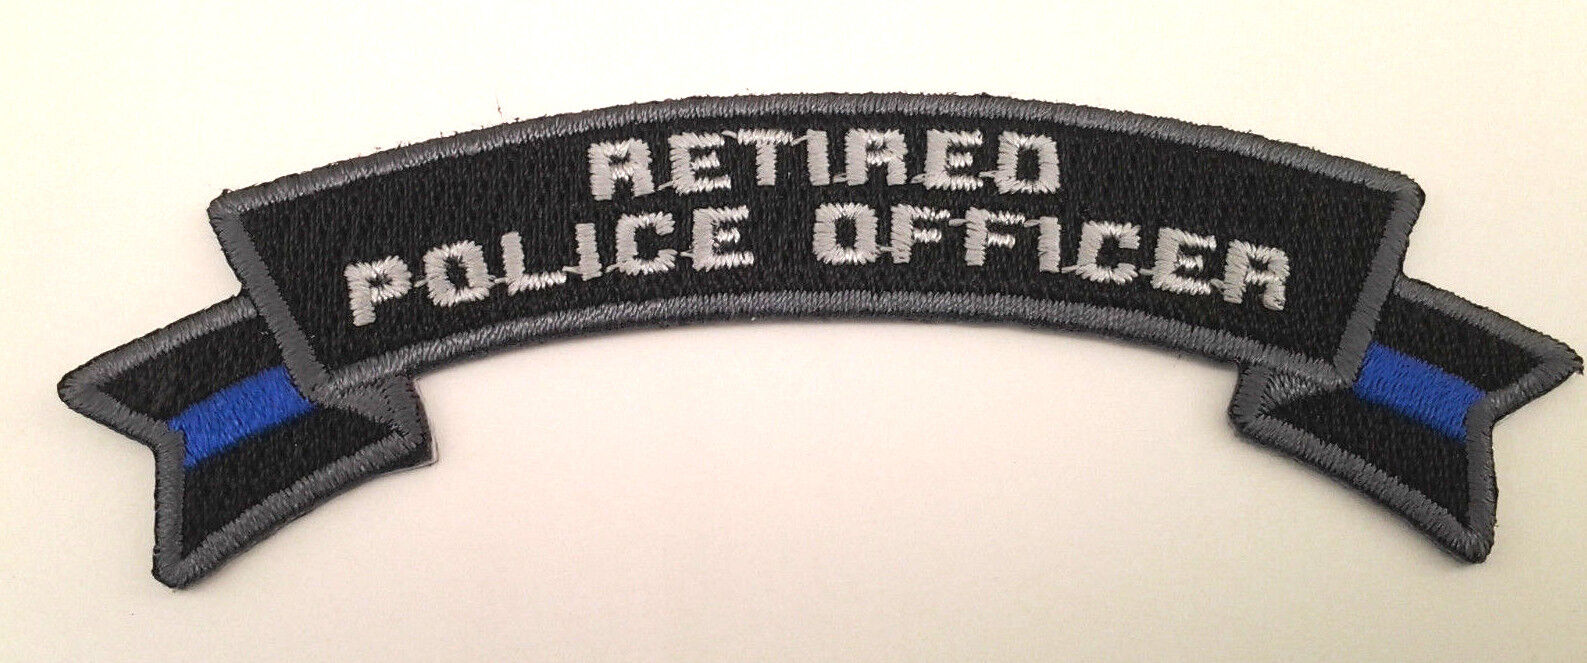 RETIRED POLICE OFFICER (4\